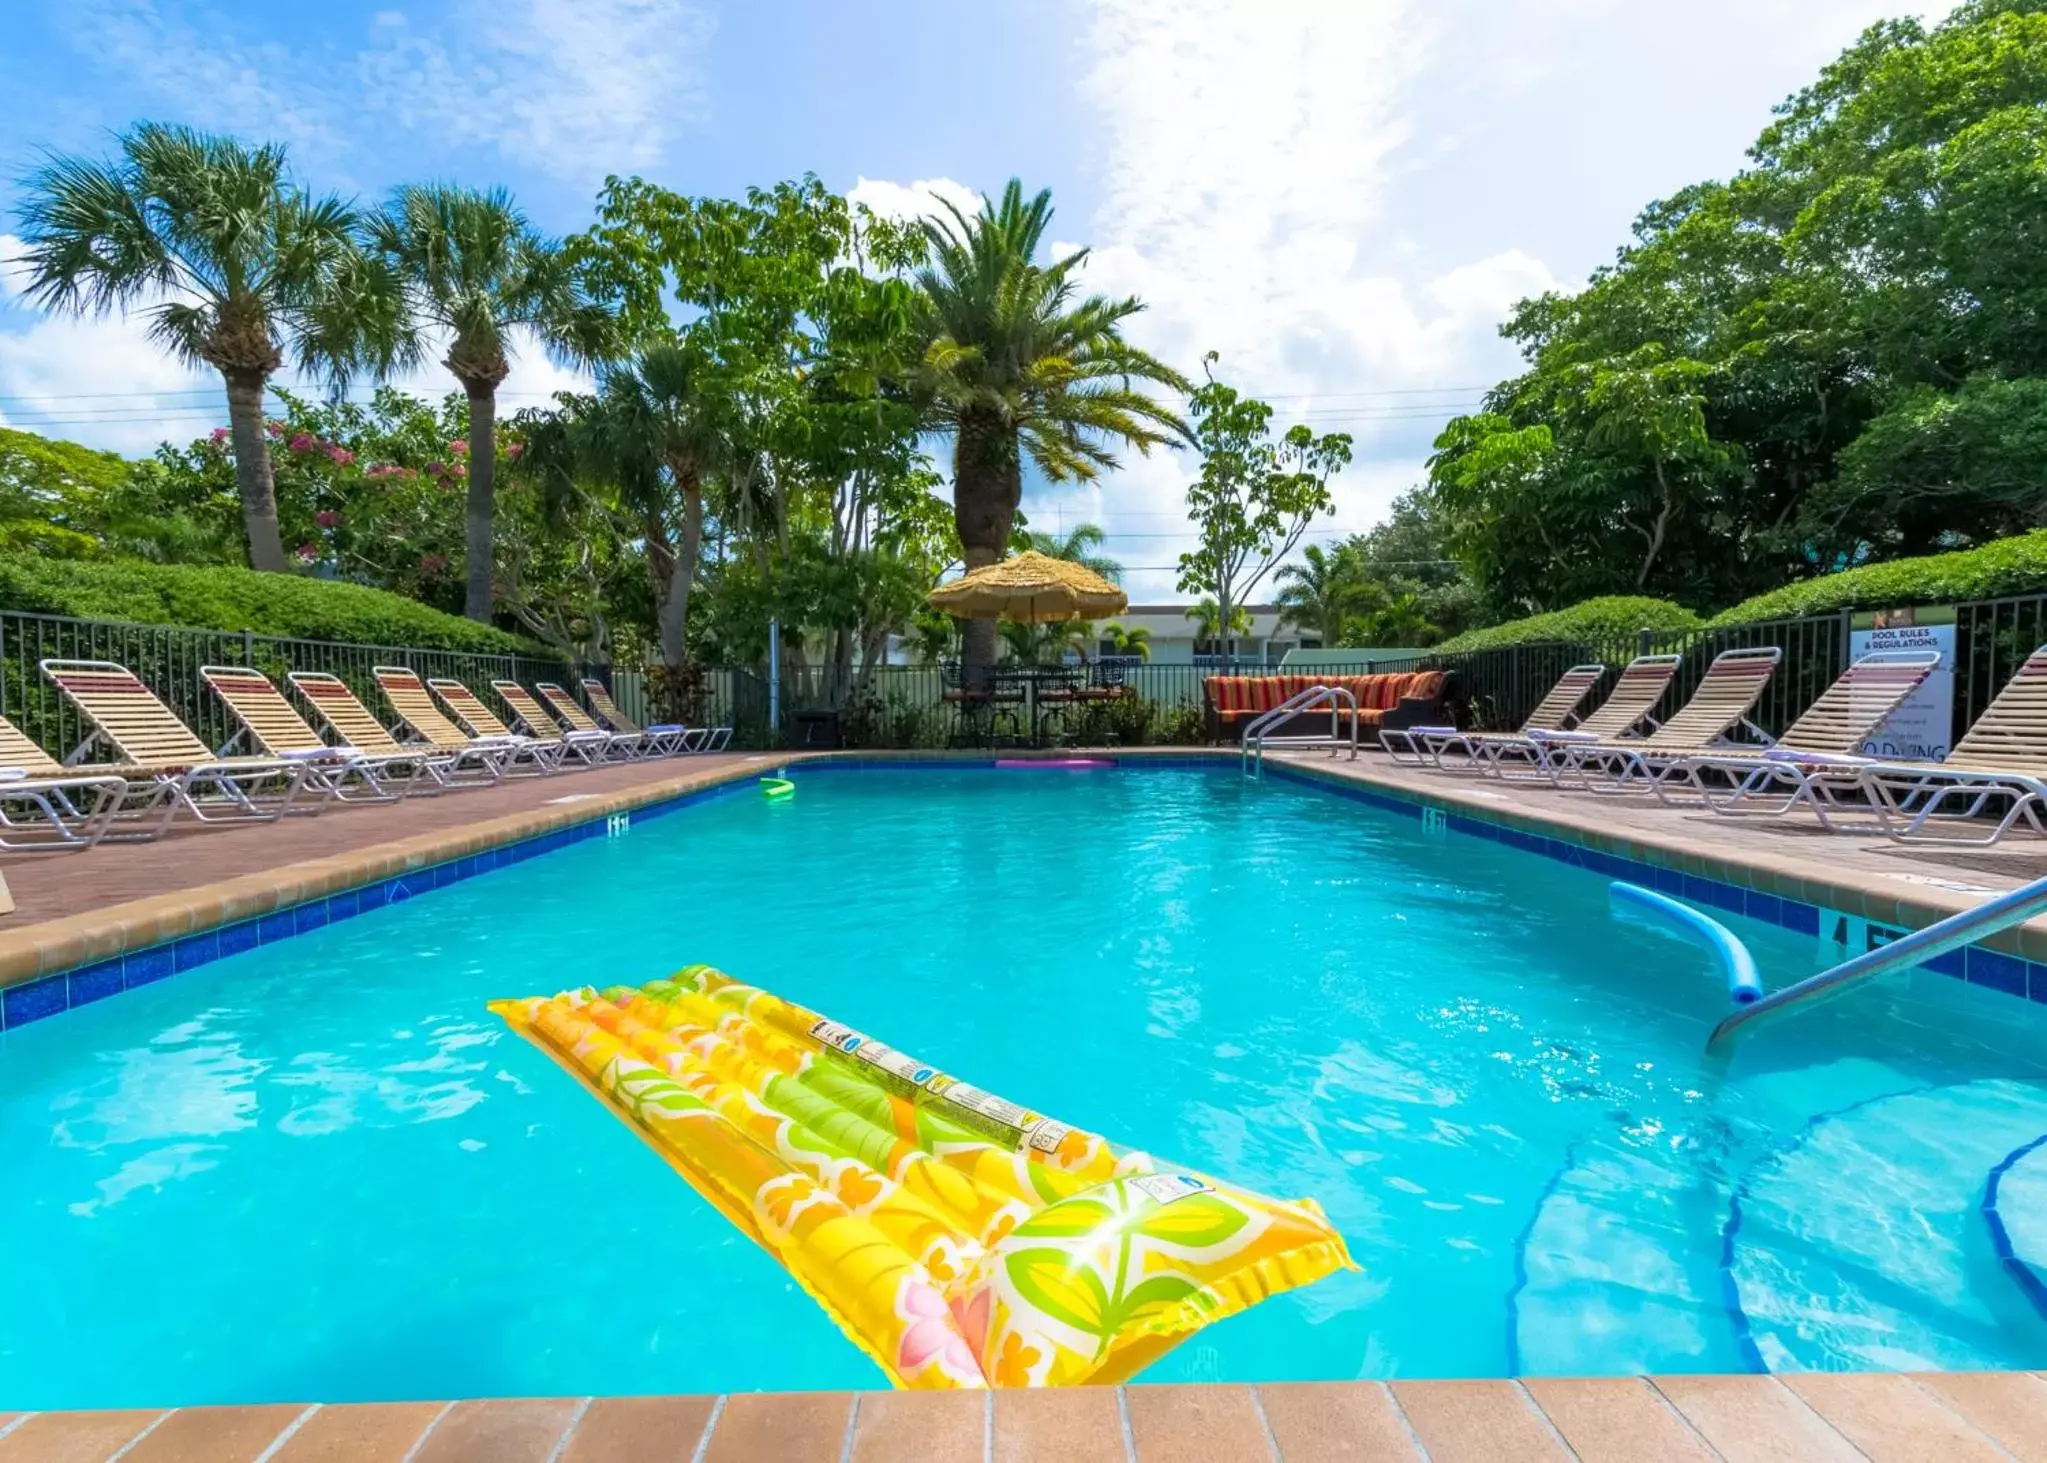 Swimming Pool in Tropical Beach Resorts - Sarasota